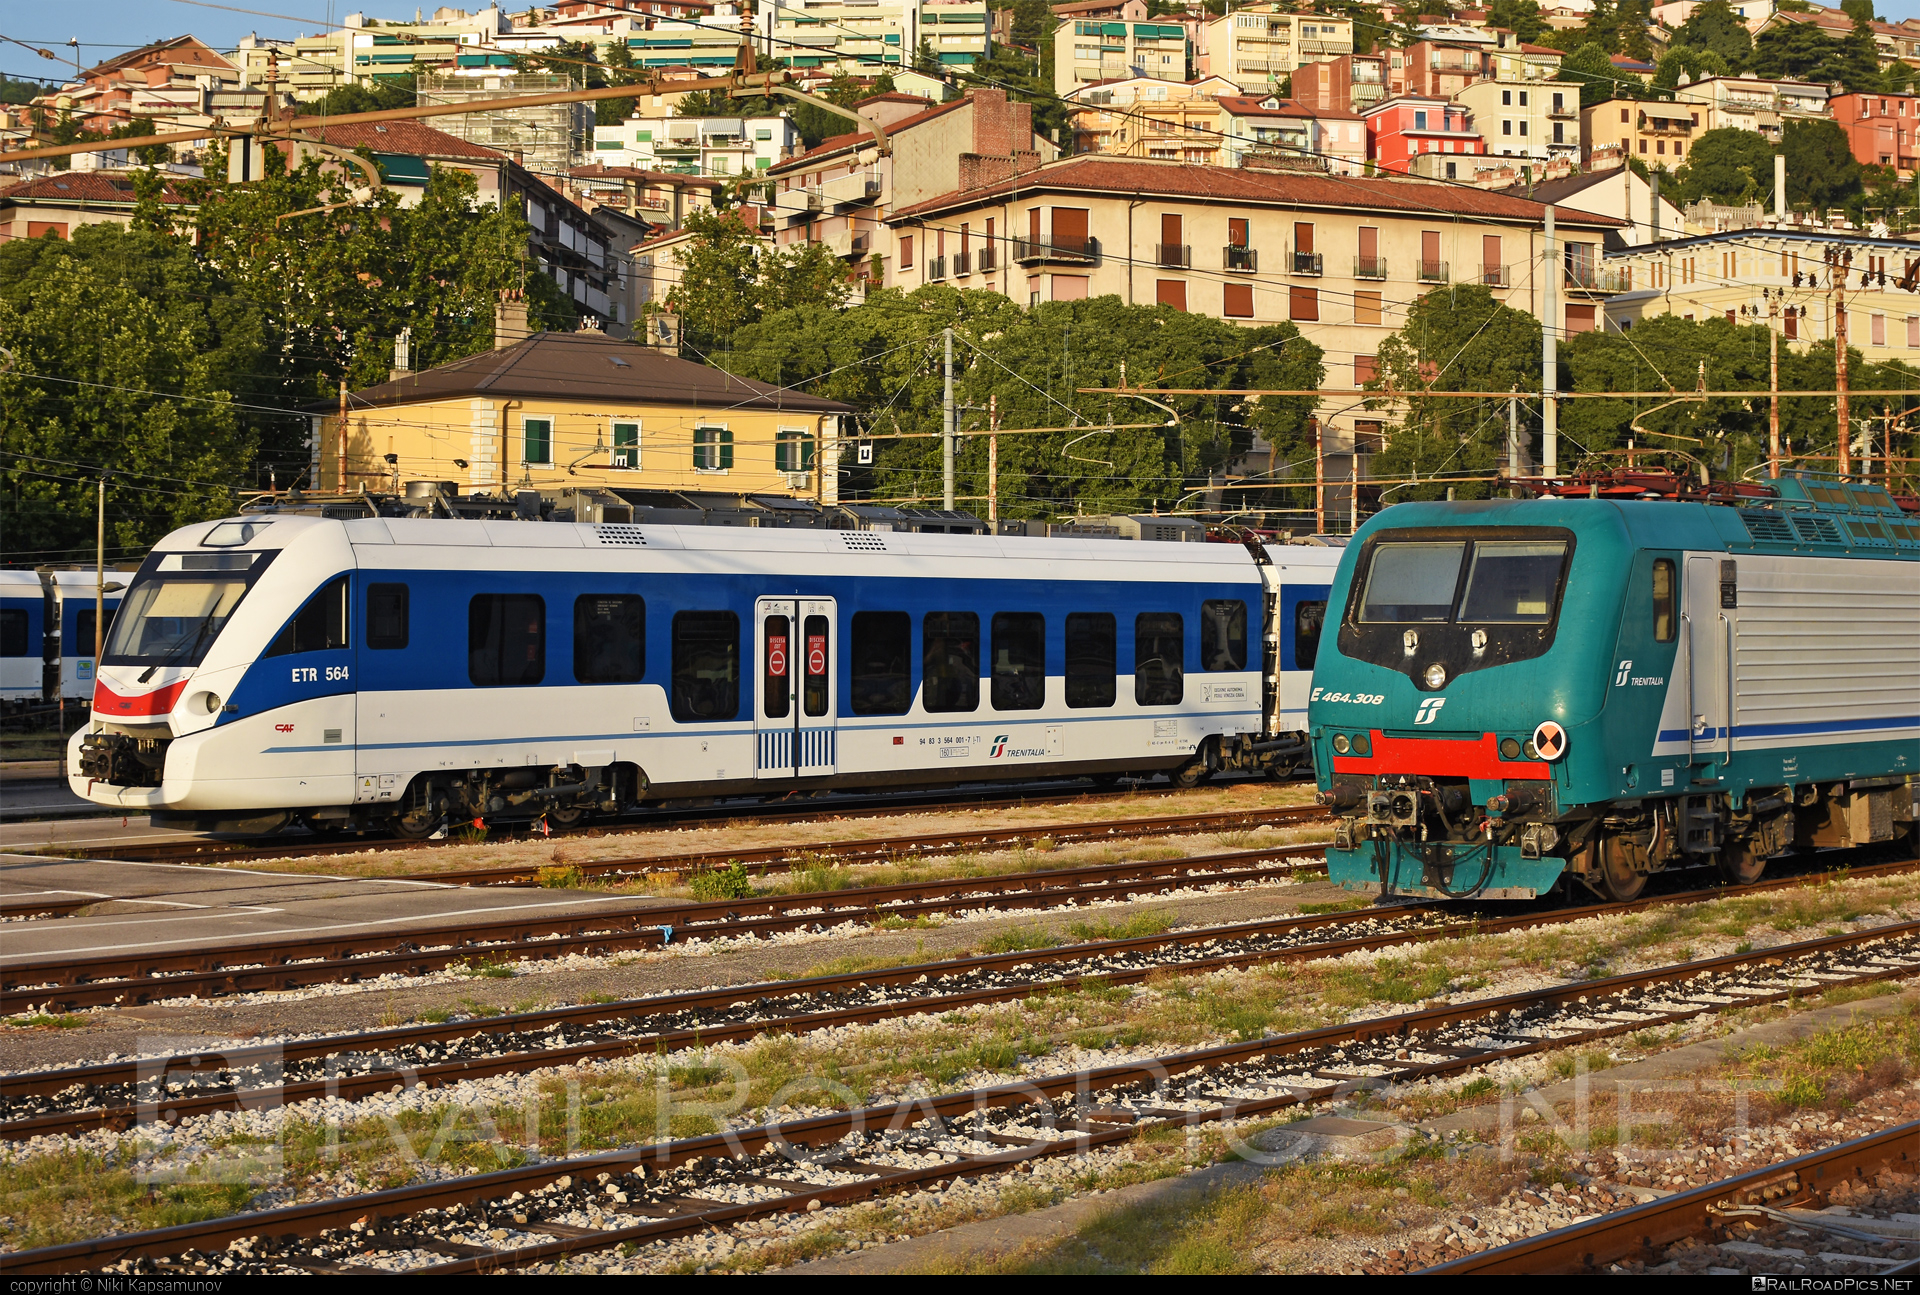 CAF Civity - 564 001-7 operated by Trenitalia S.p.A. #ConstruccionesYAuxiliarDeFerrocarriles #caf #cafcivity #civity #ferroviedellostato #fs #fsitaliane #trenitalia #trenitaliaspa